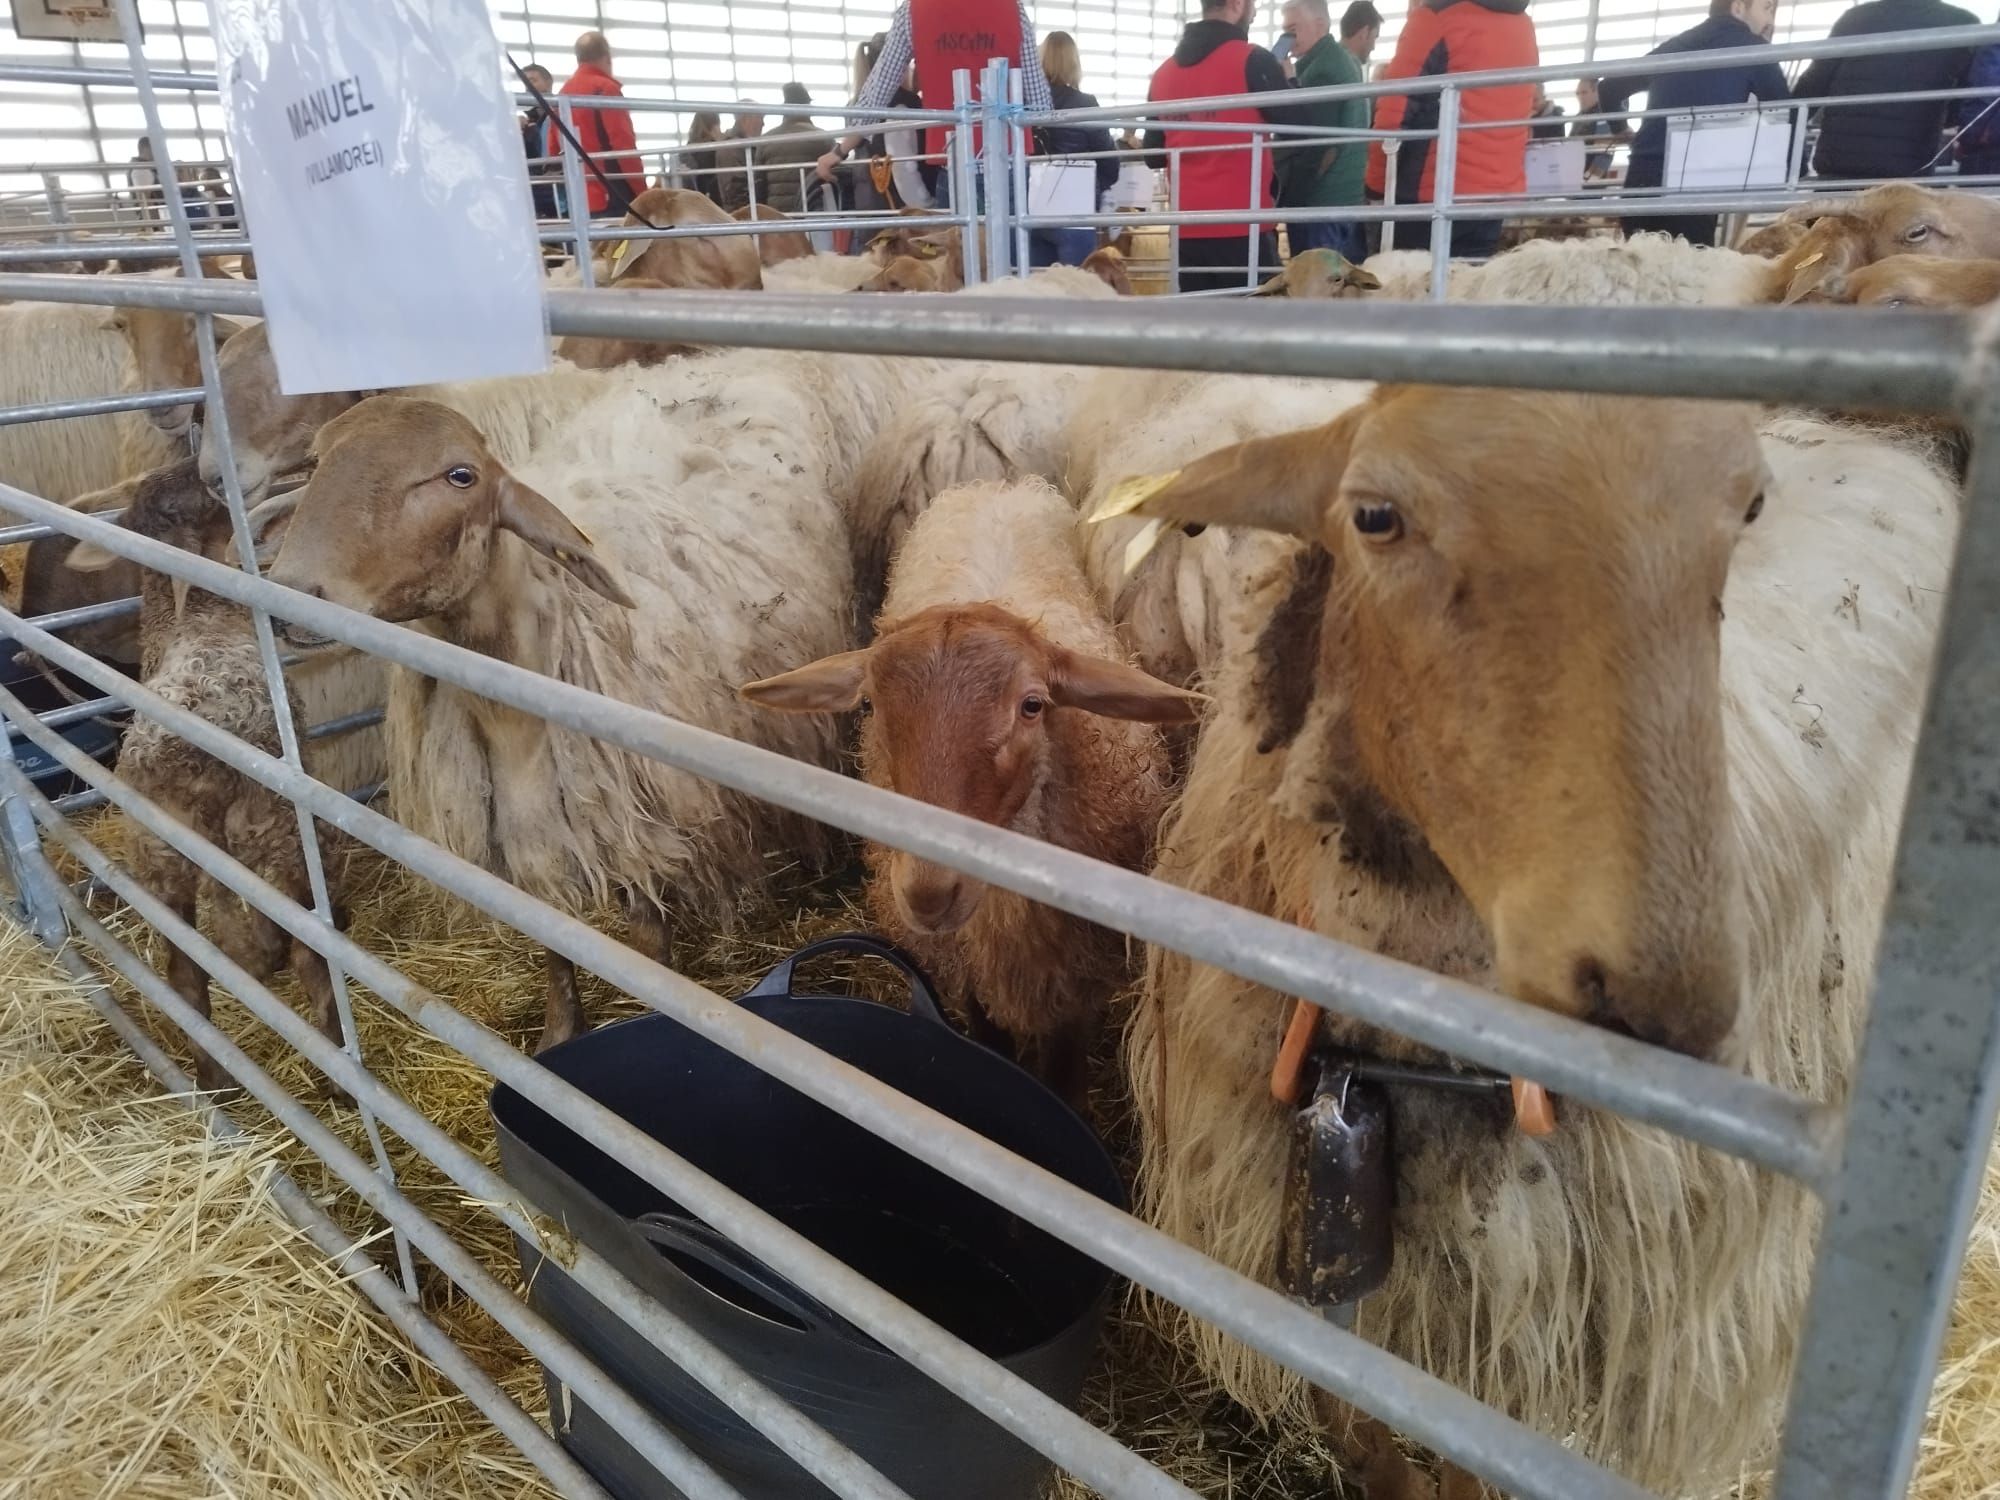 4º Concurso de Ovejas Carranzana y Exposición de Cabras en Soto de Agues (Sobrescobio)